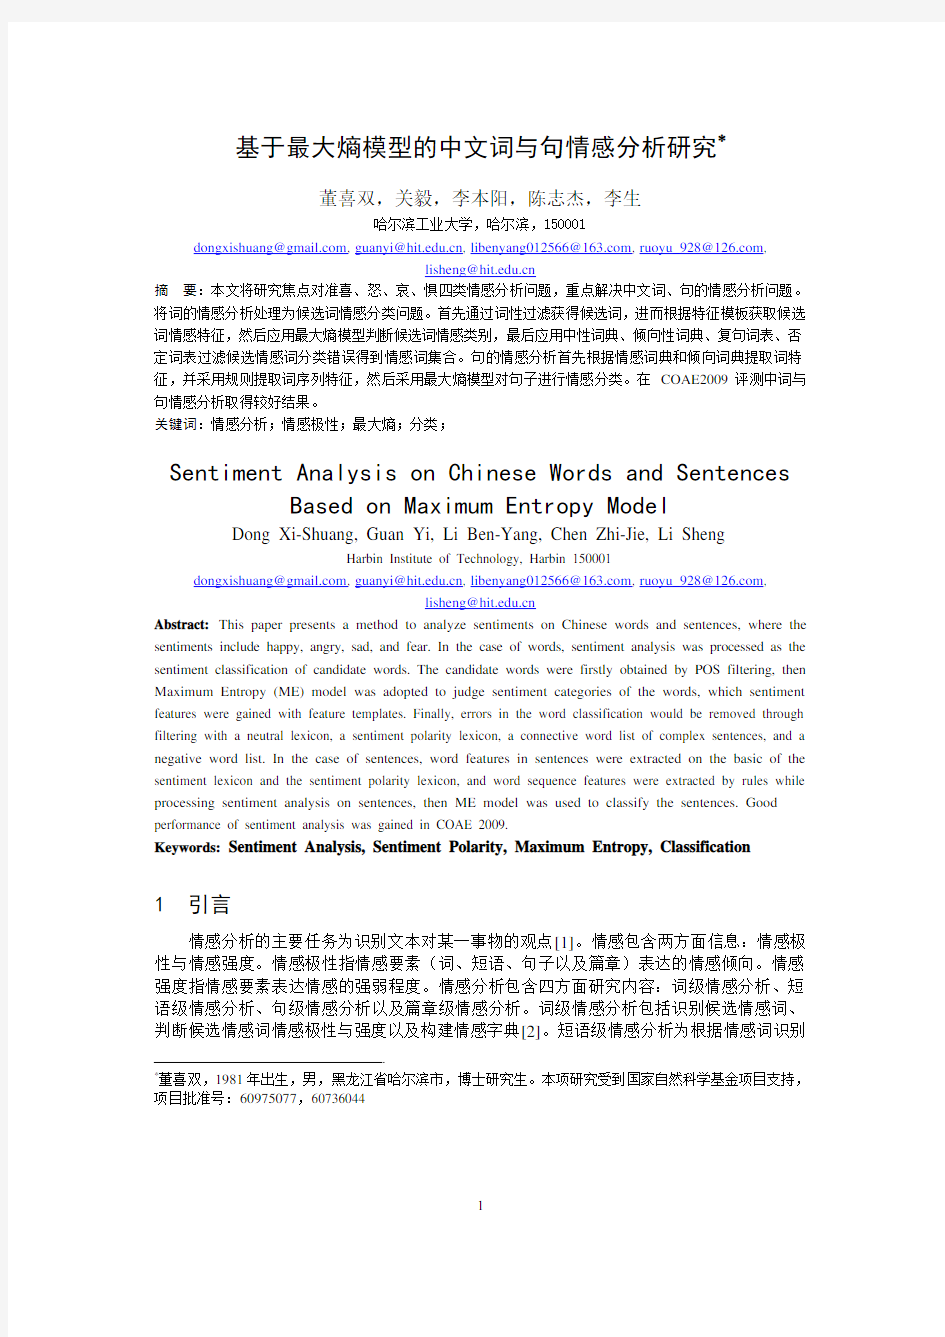 基于最大熵模型的中文词与句情感分析研究pdf